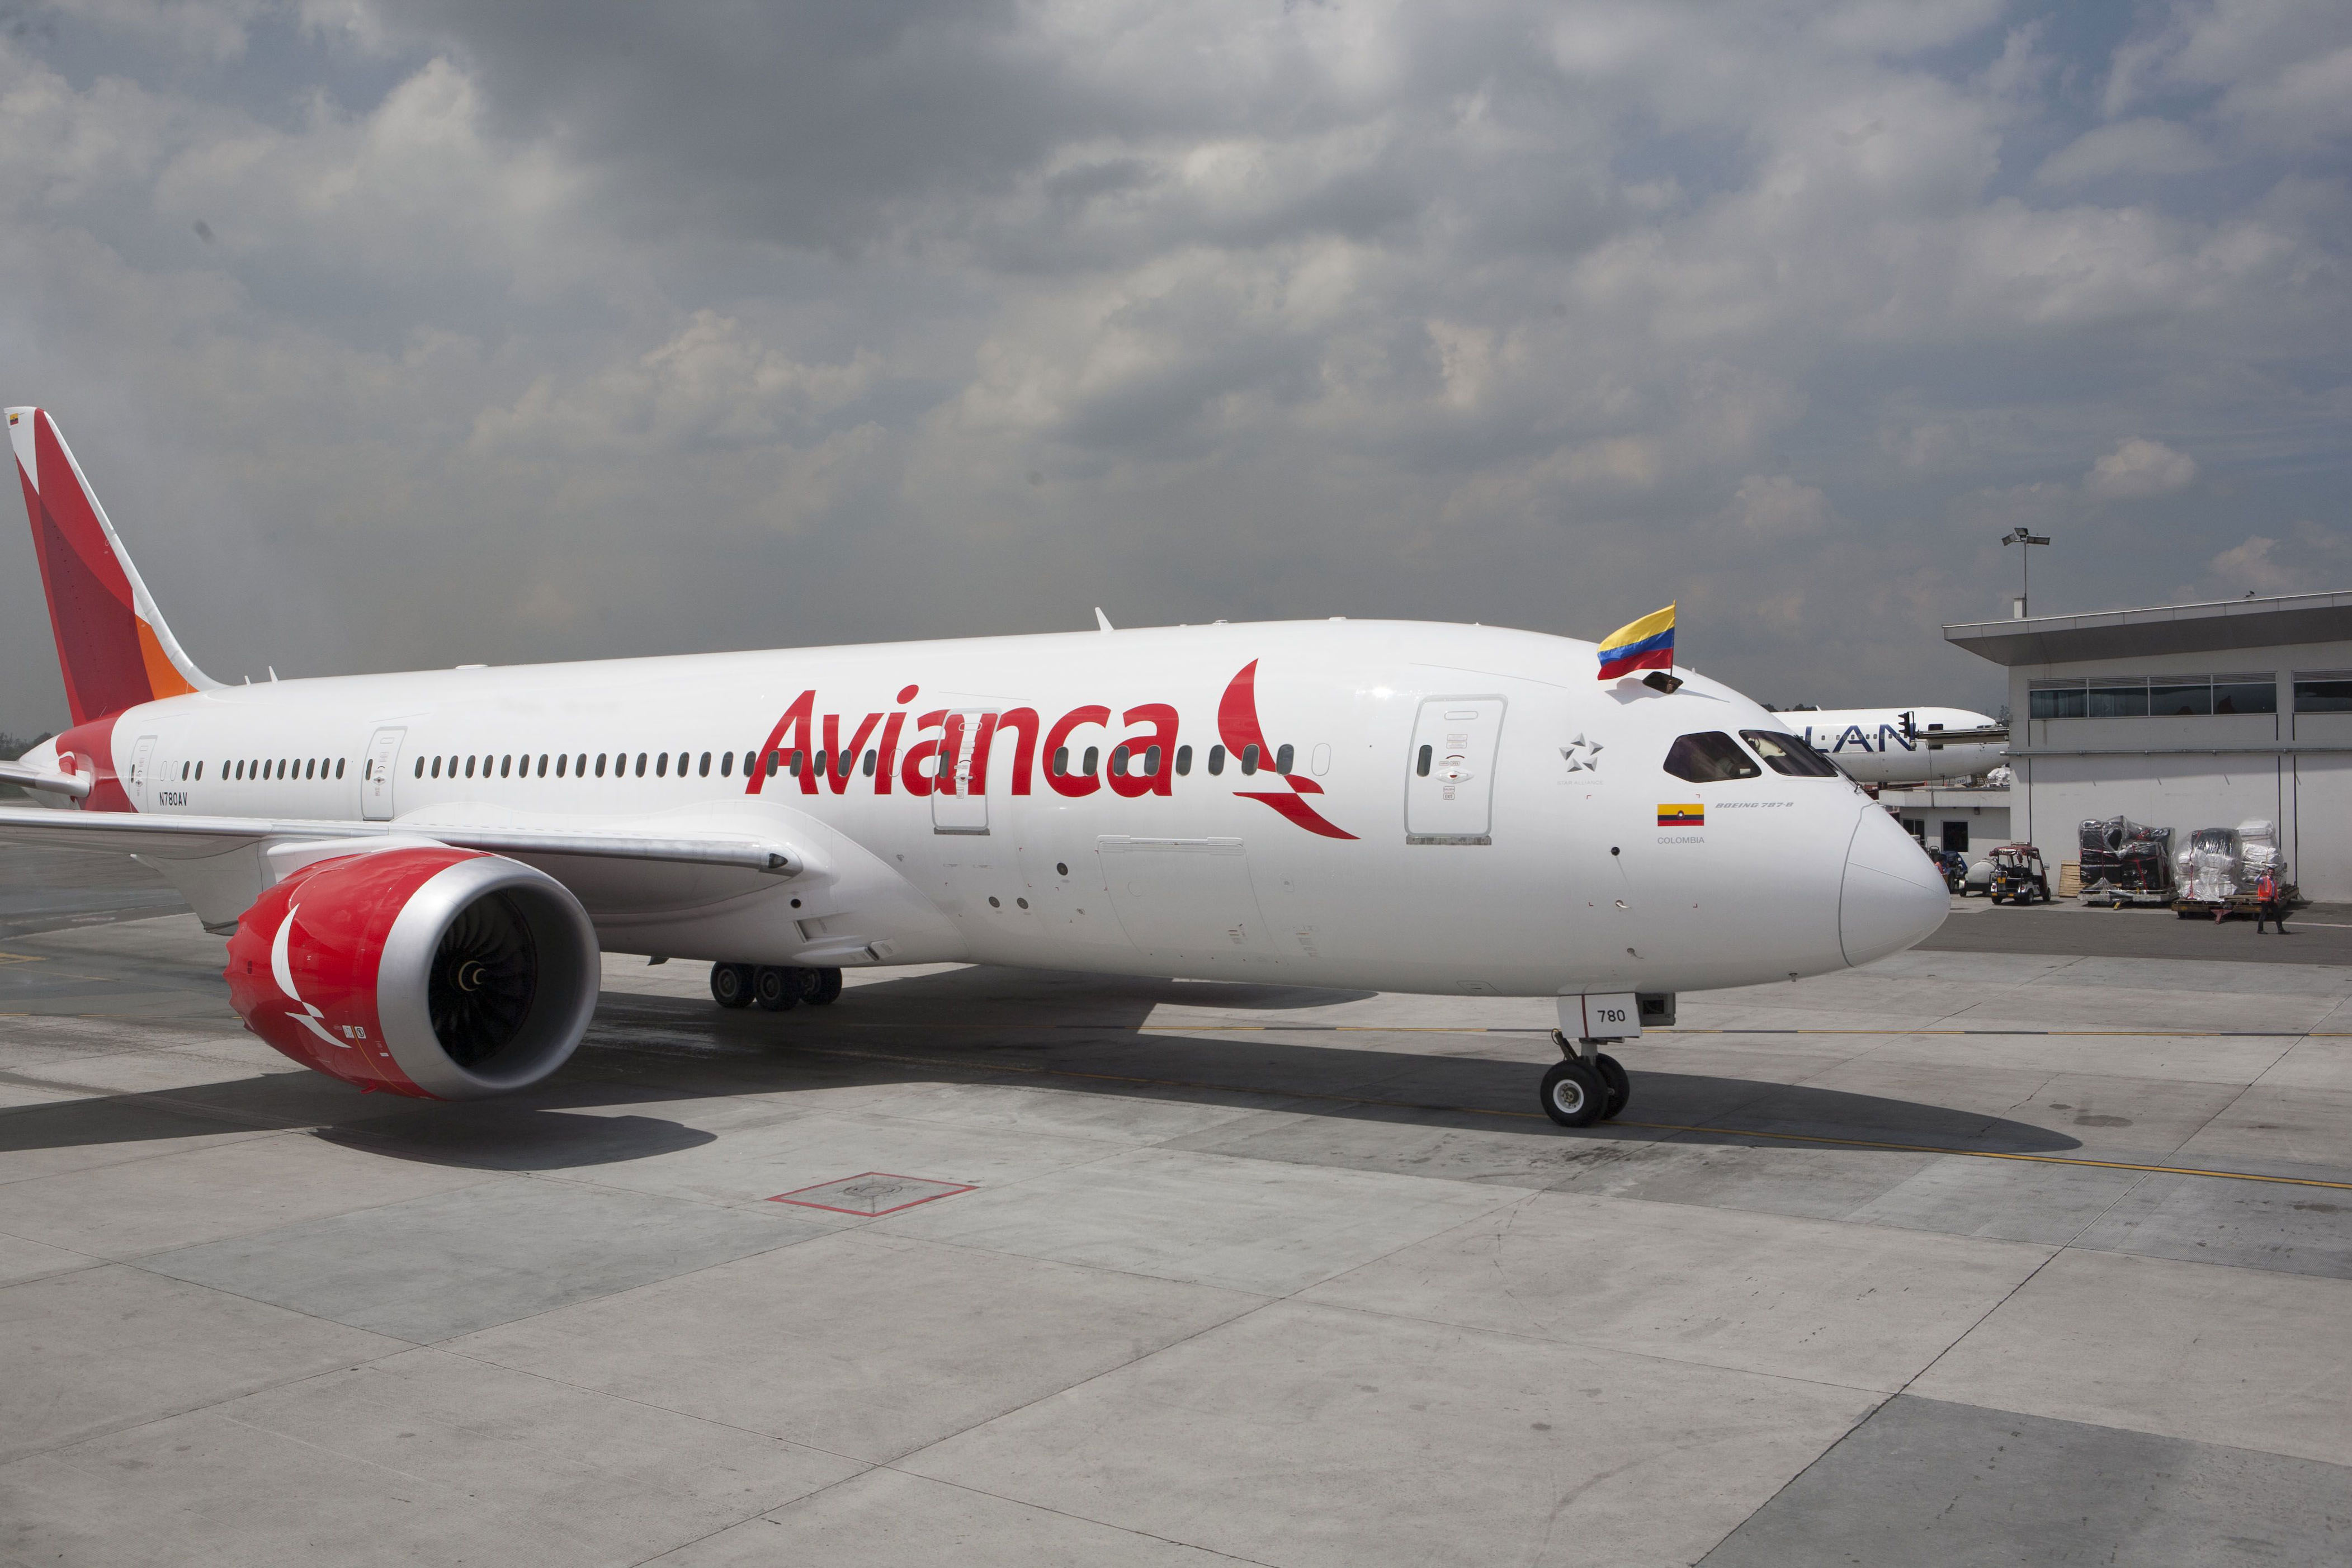 fechas y destinos: avianca lanzó una ‘oferta relámpago’ con vuelos desde $59.300